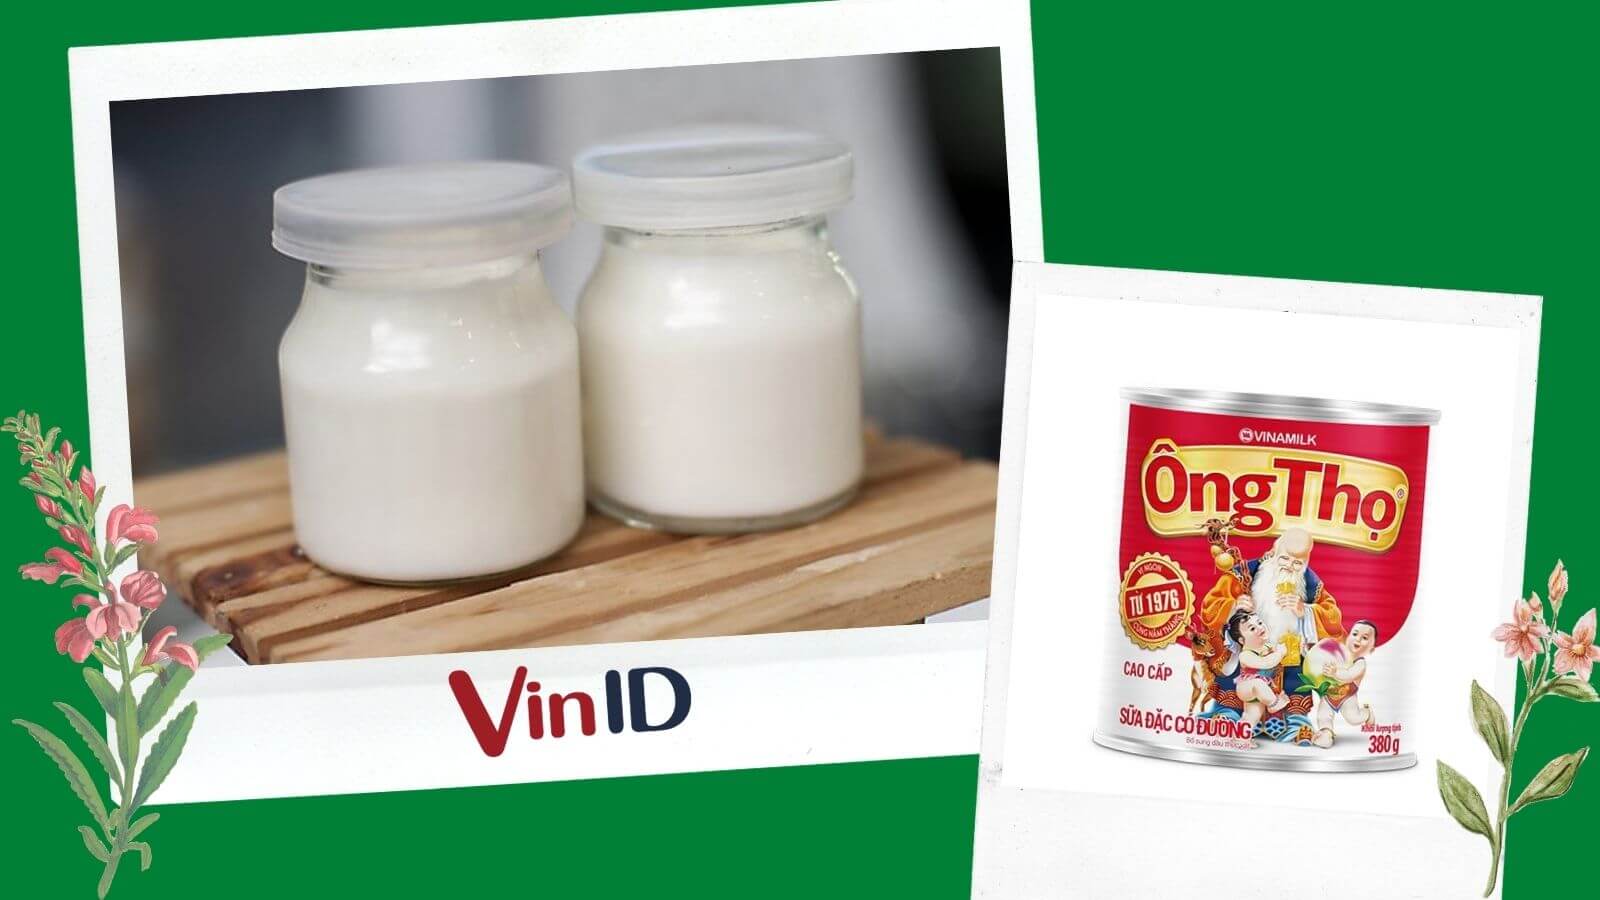 Cách bảo quản sữa chua ông thọ sau khi làm tại nhà để đảm bảo an toàn cho sức khỏe?
